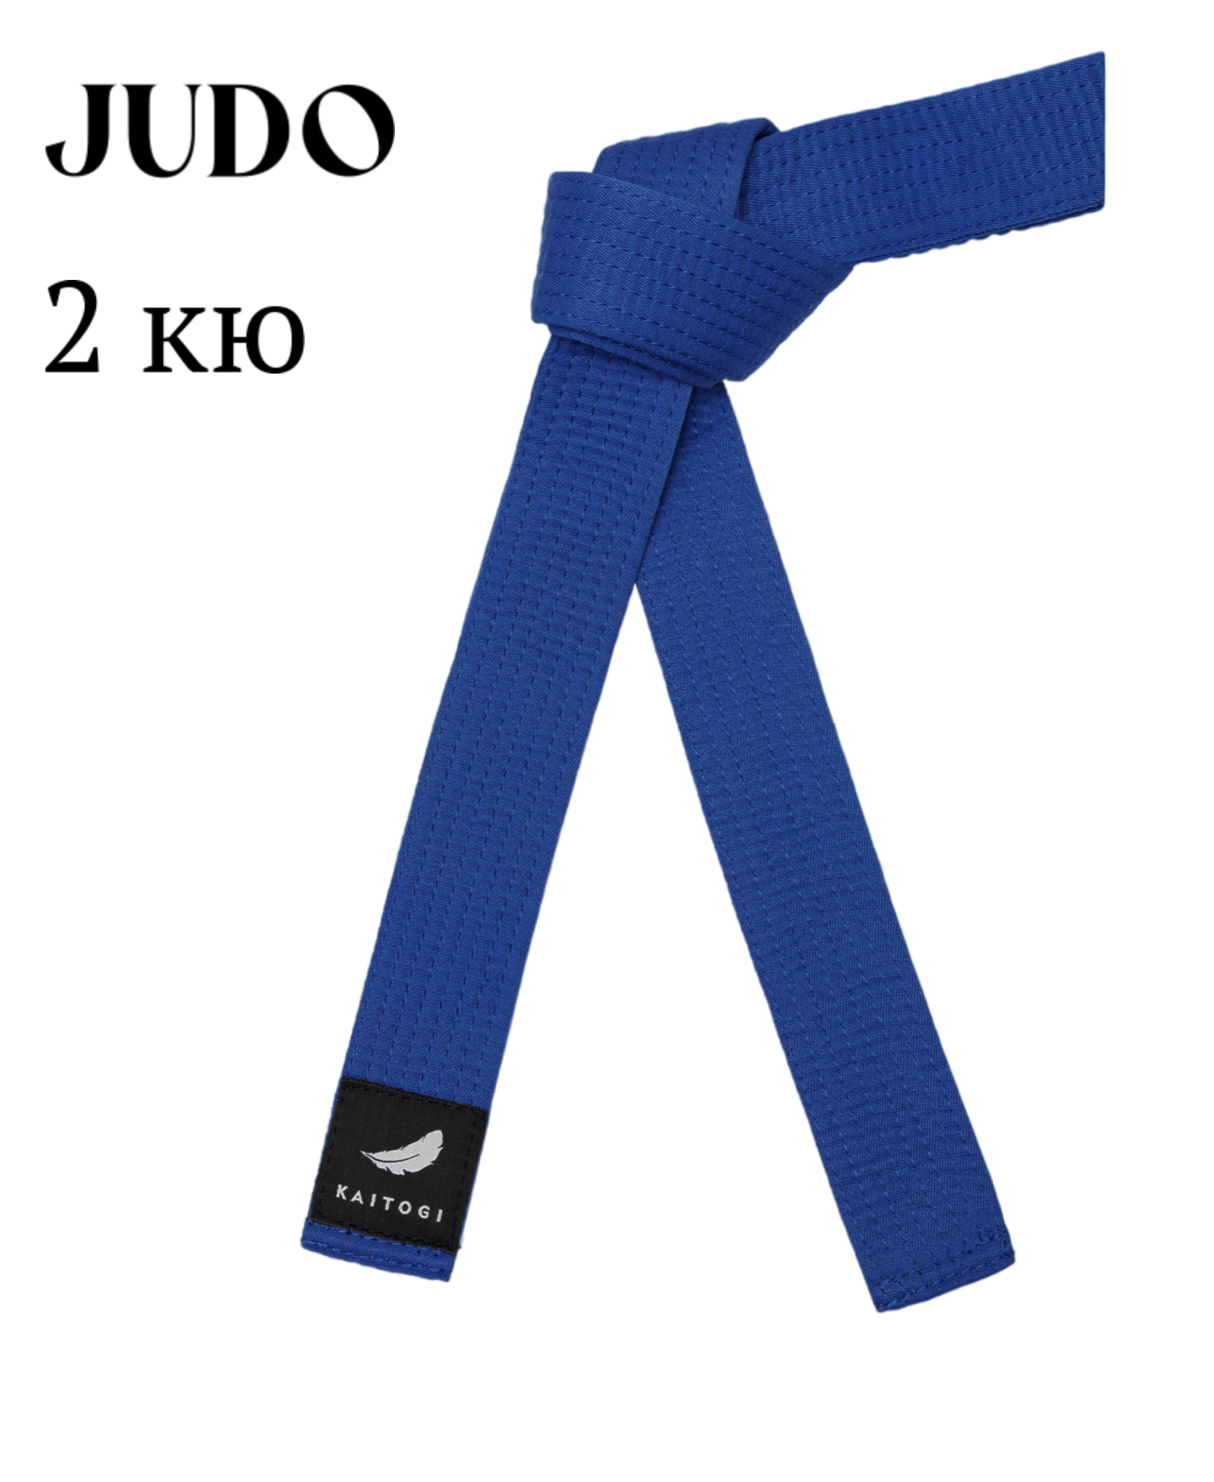 Пояс KAITOGI для дзюдо 2 кю синий 310 см